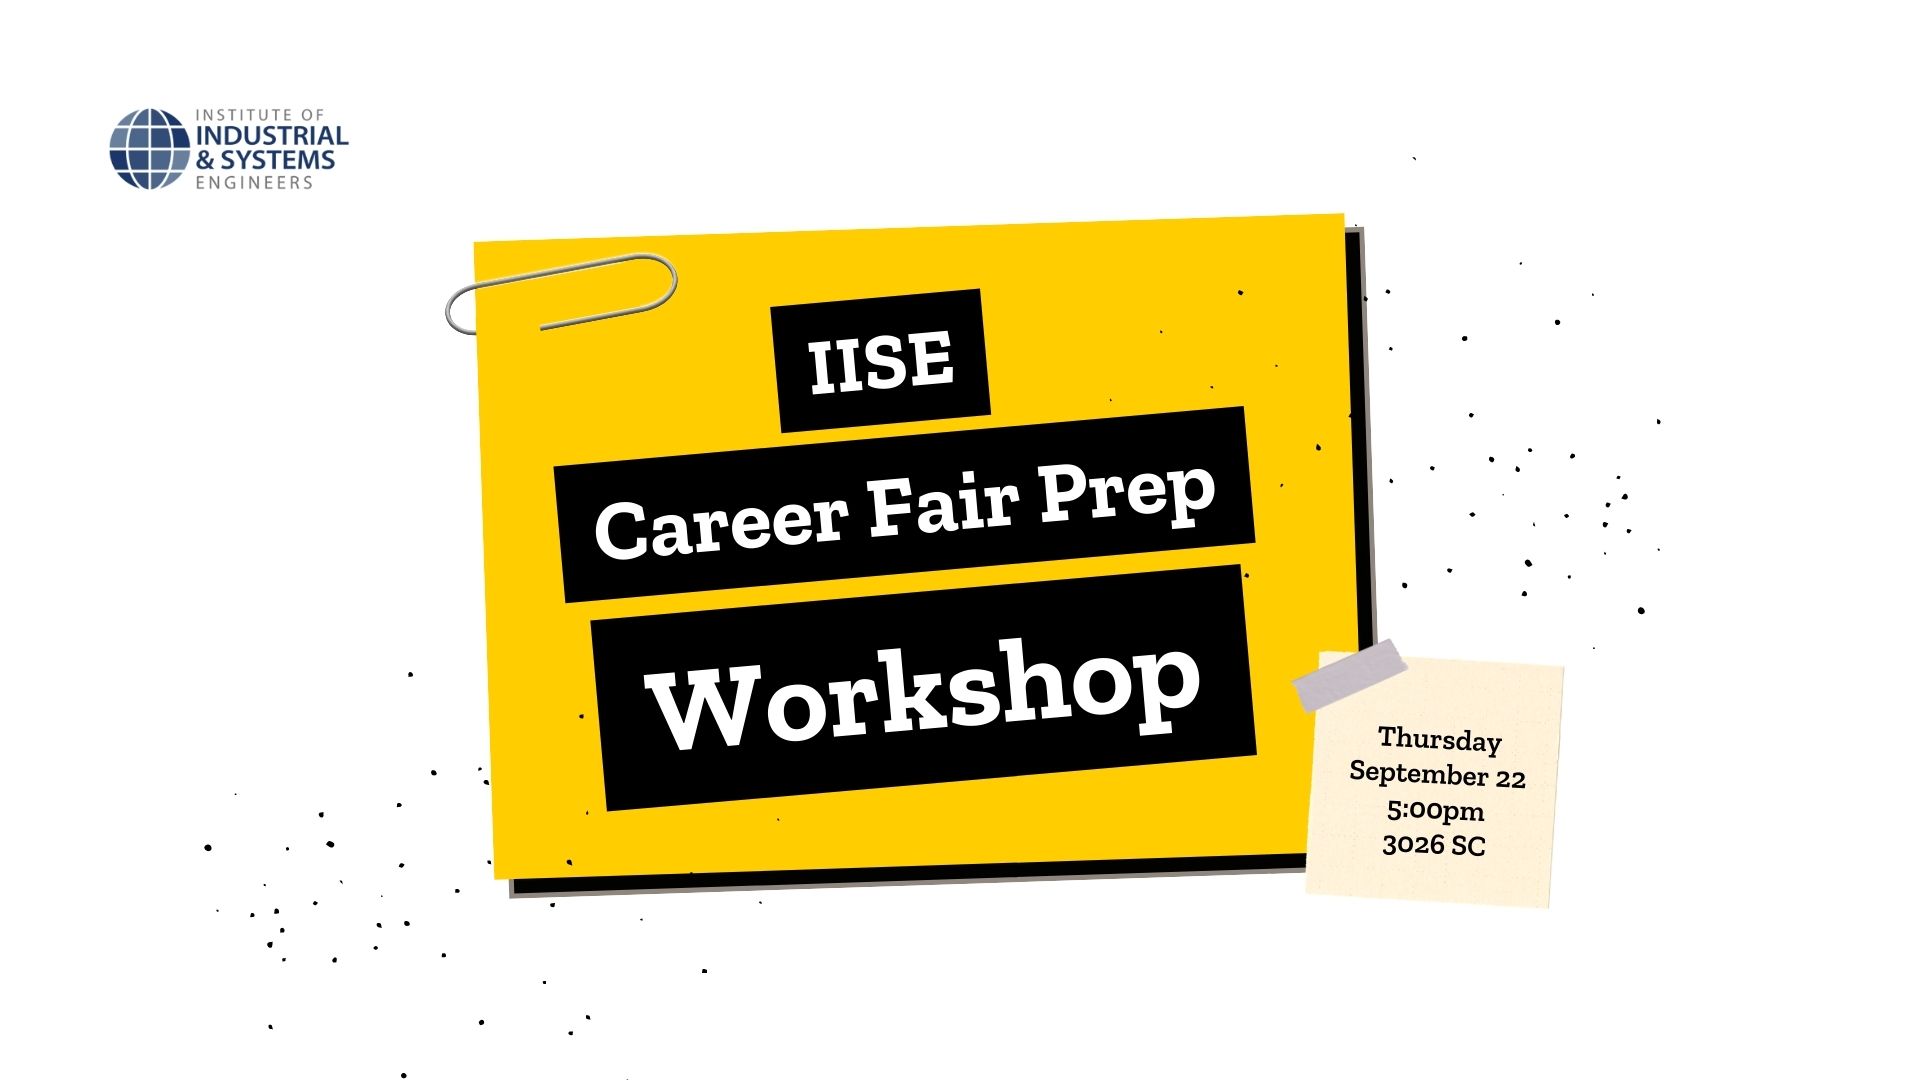 iise career fair prep workshop